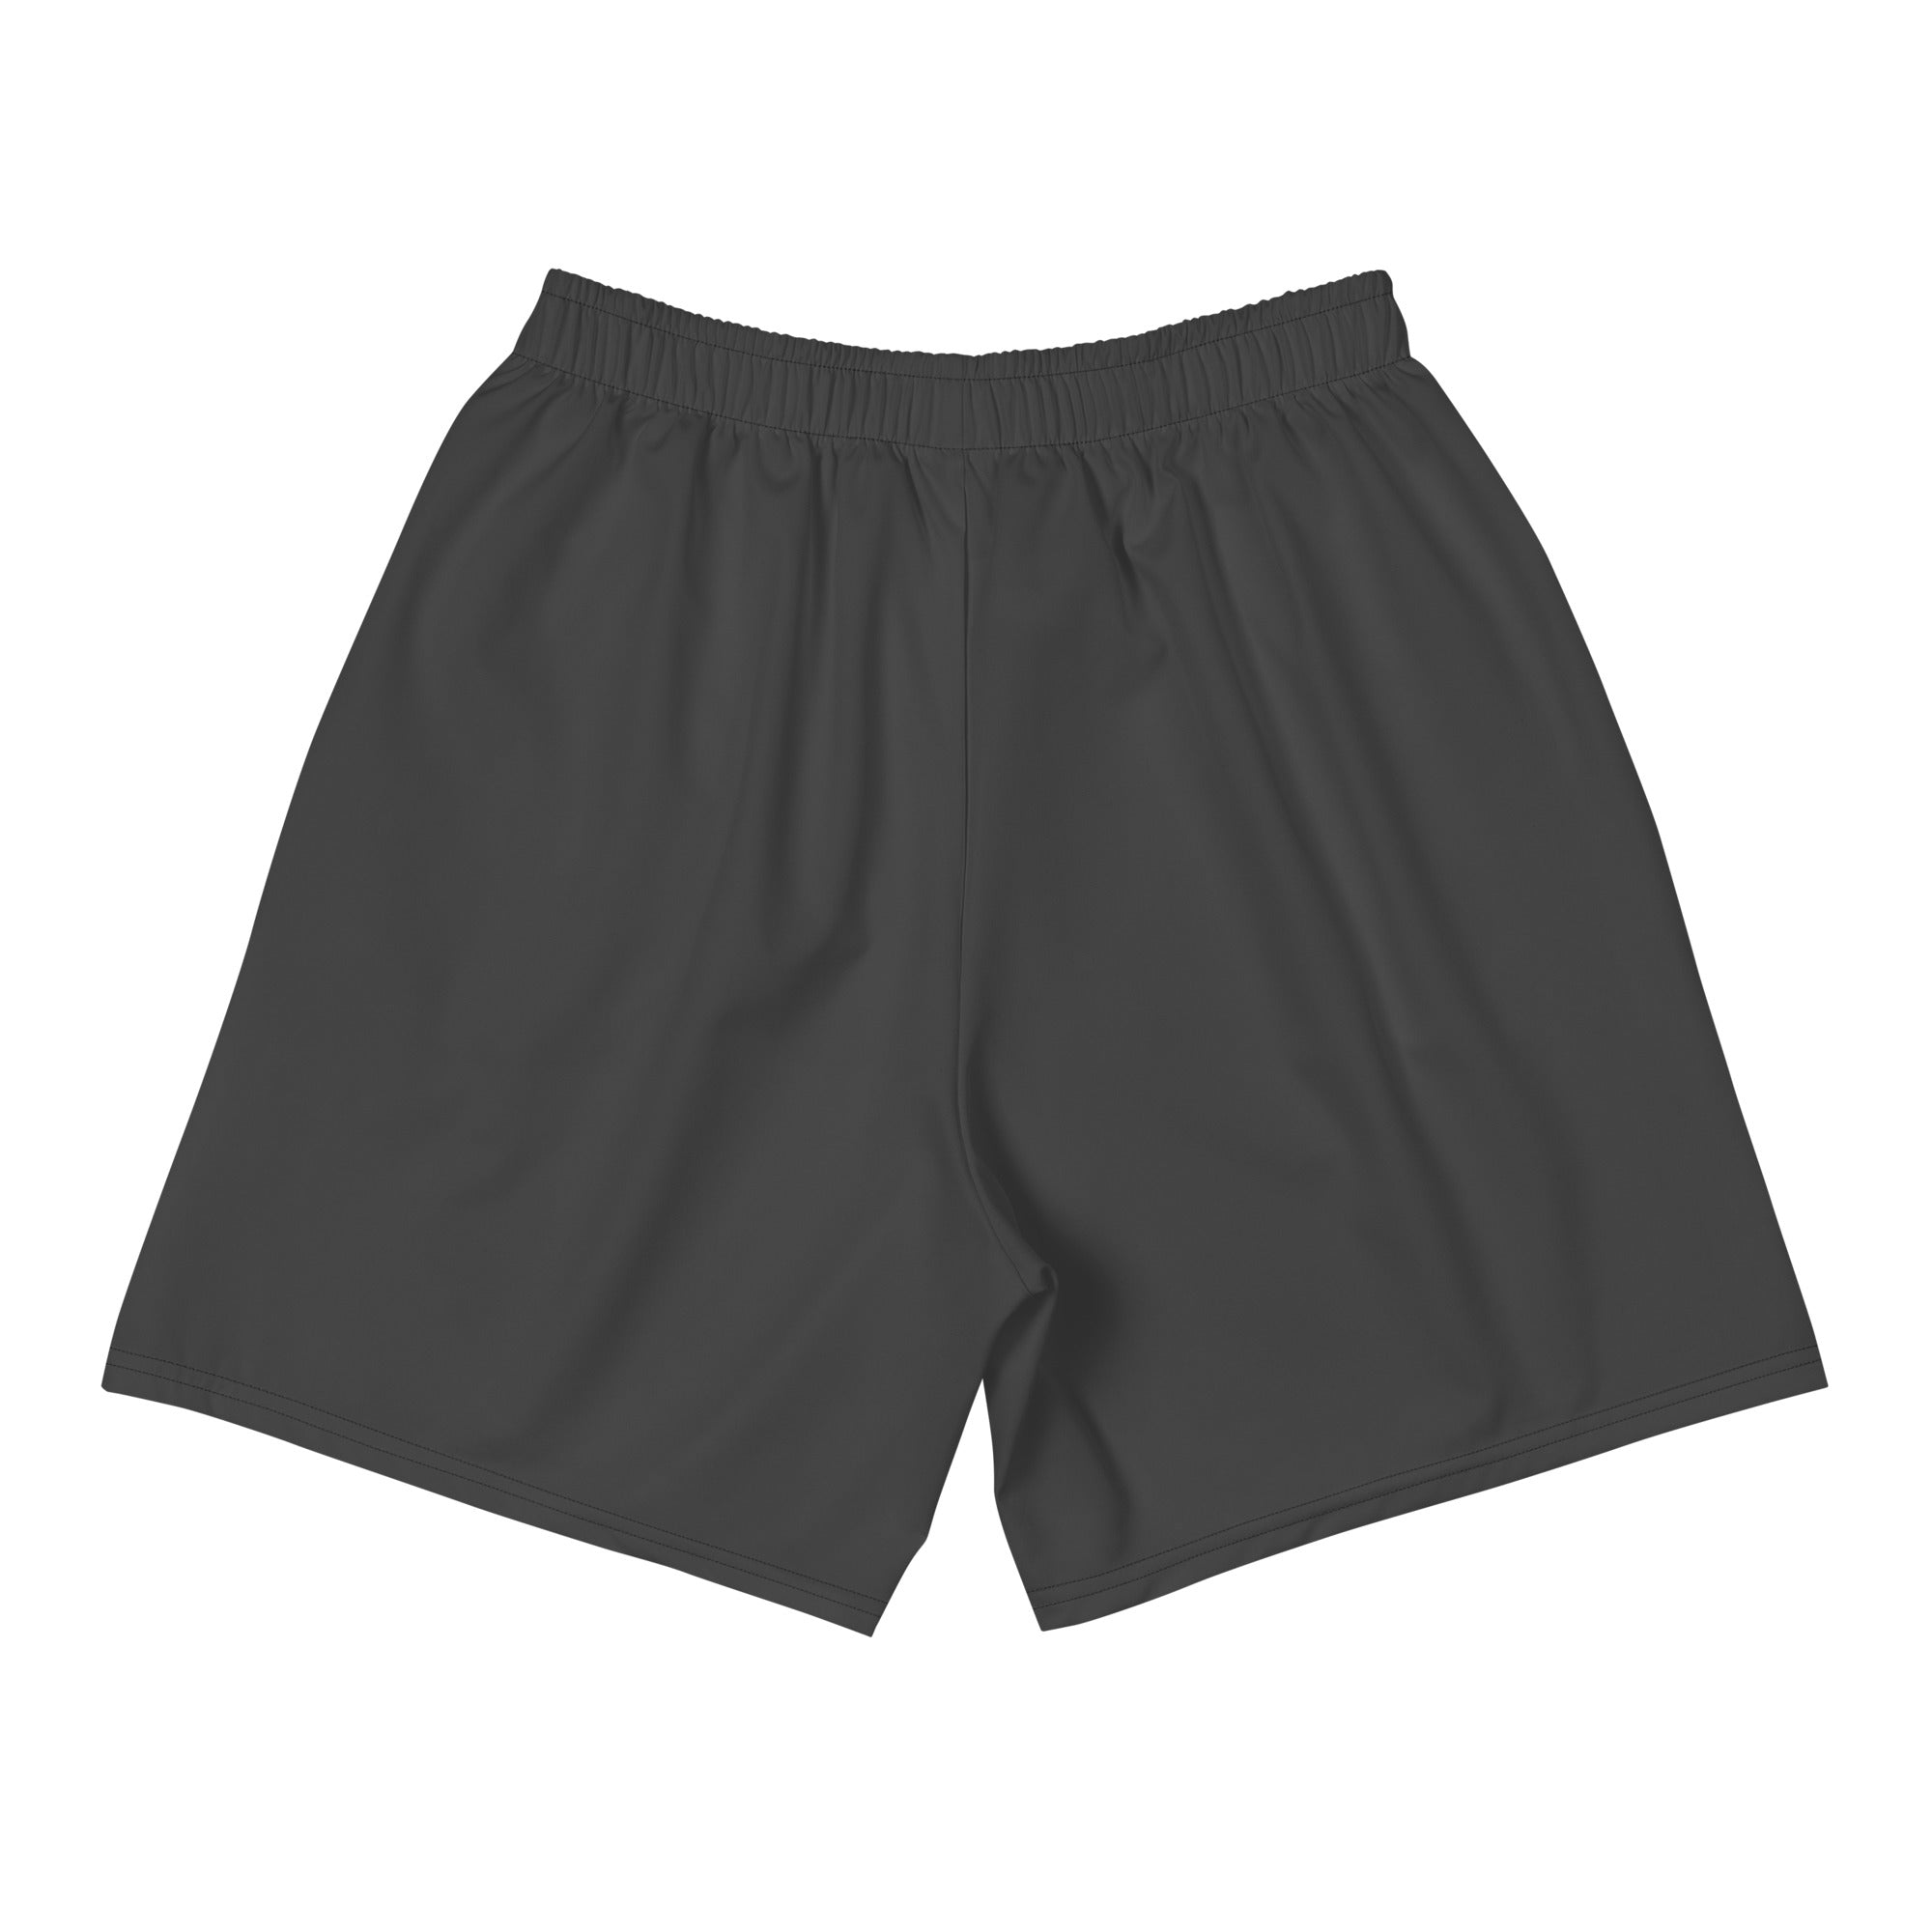 "The Jiu Jitsu Ram" Men's Athletic Training Shorts (Eclipse Grey)